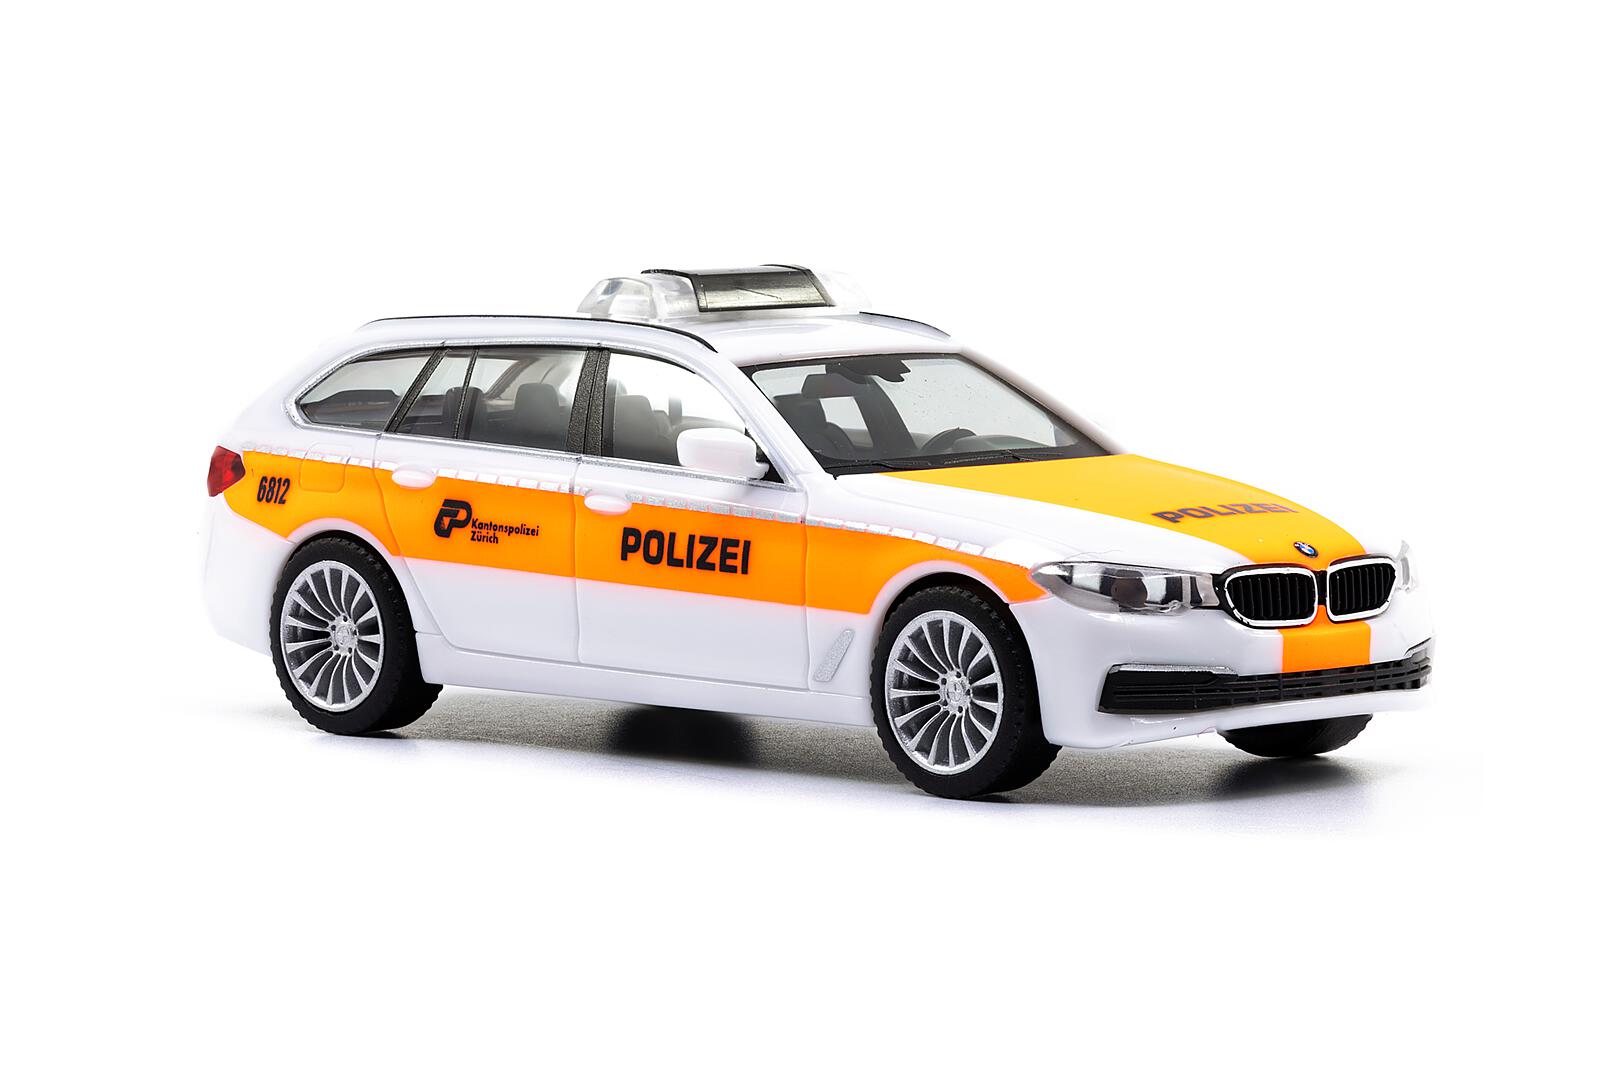 Modellbahn-Kramm: Herpa 430708-003 1:87 BMW 5er Touring G31, saphirschwarz  metallic, nur 16,25 €